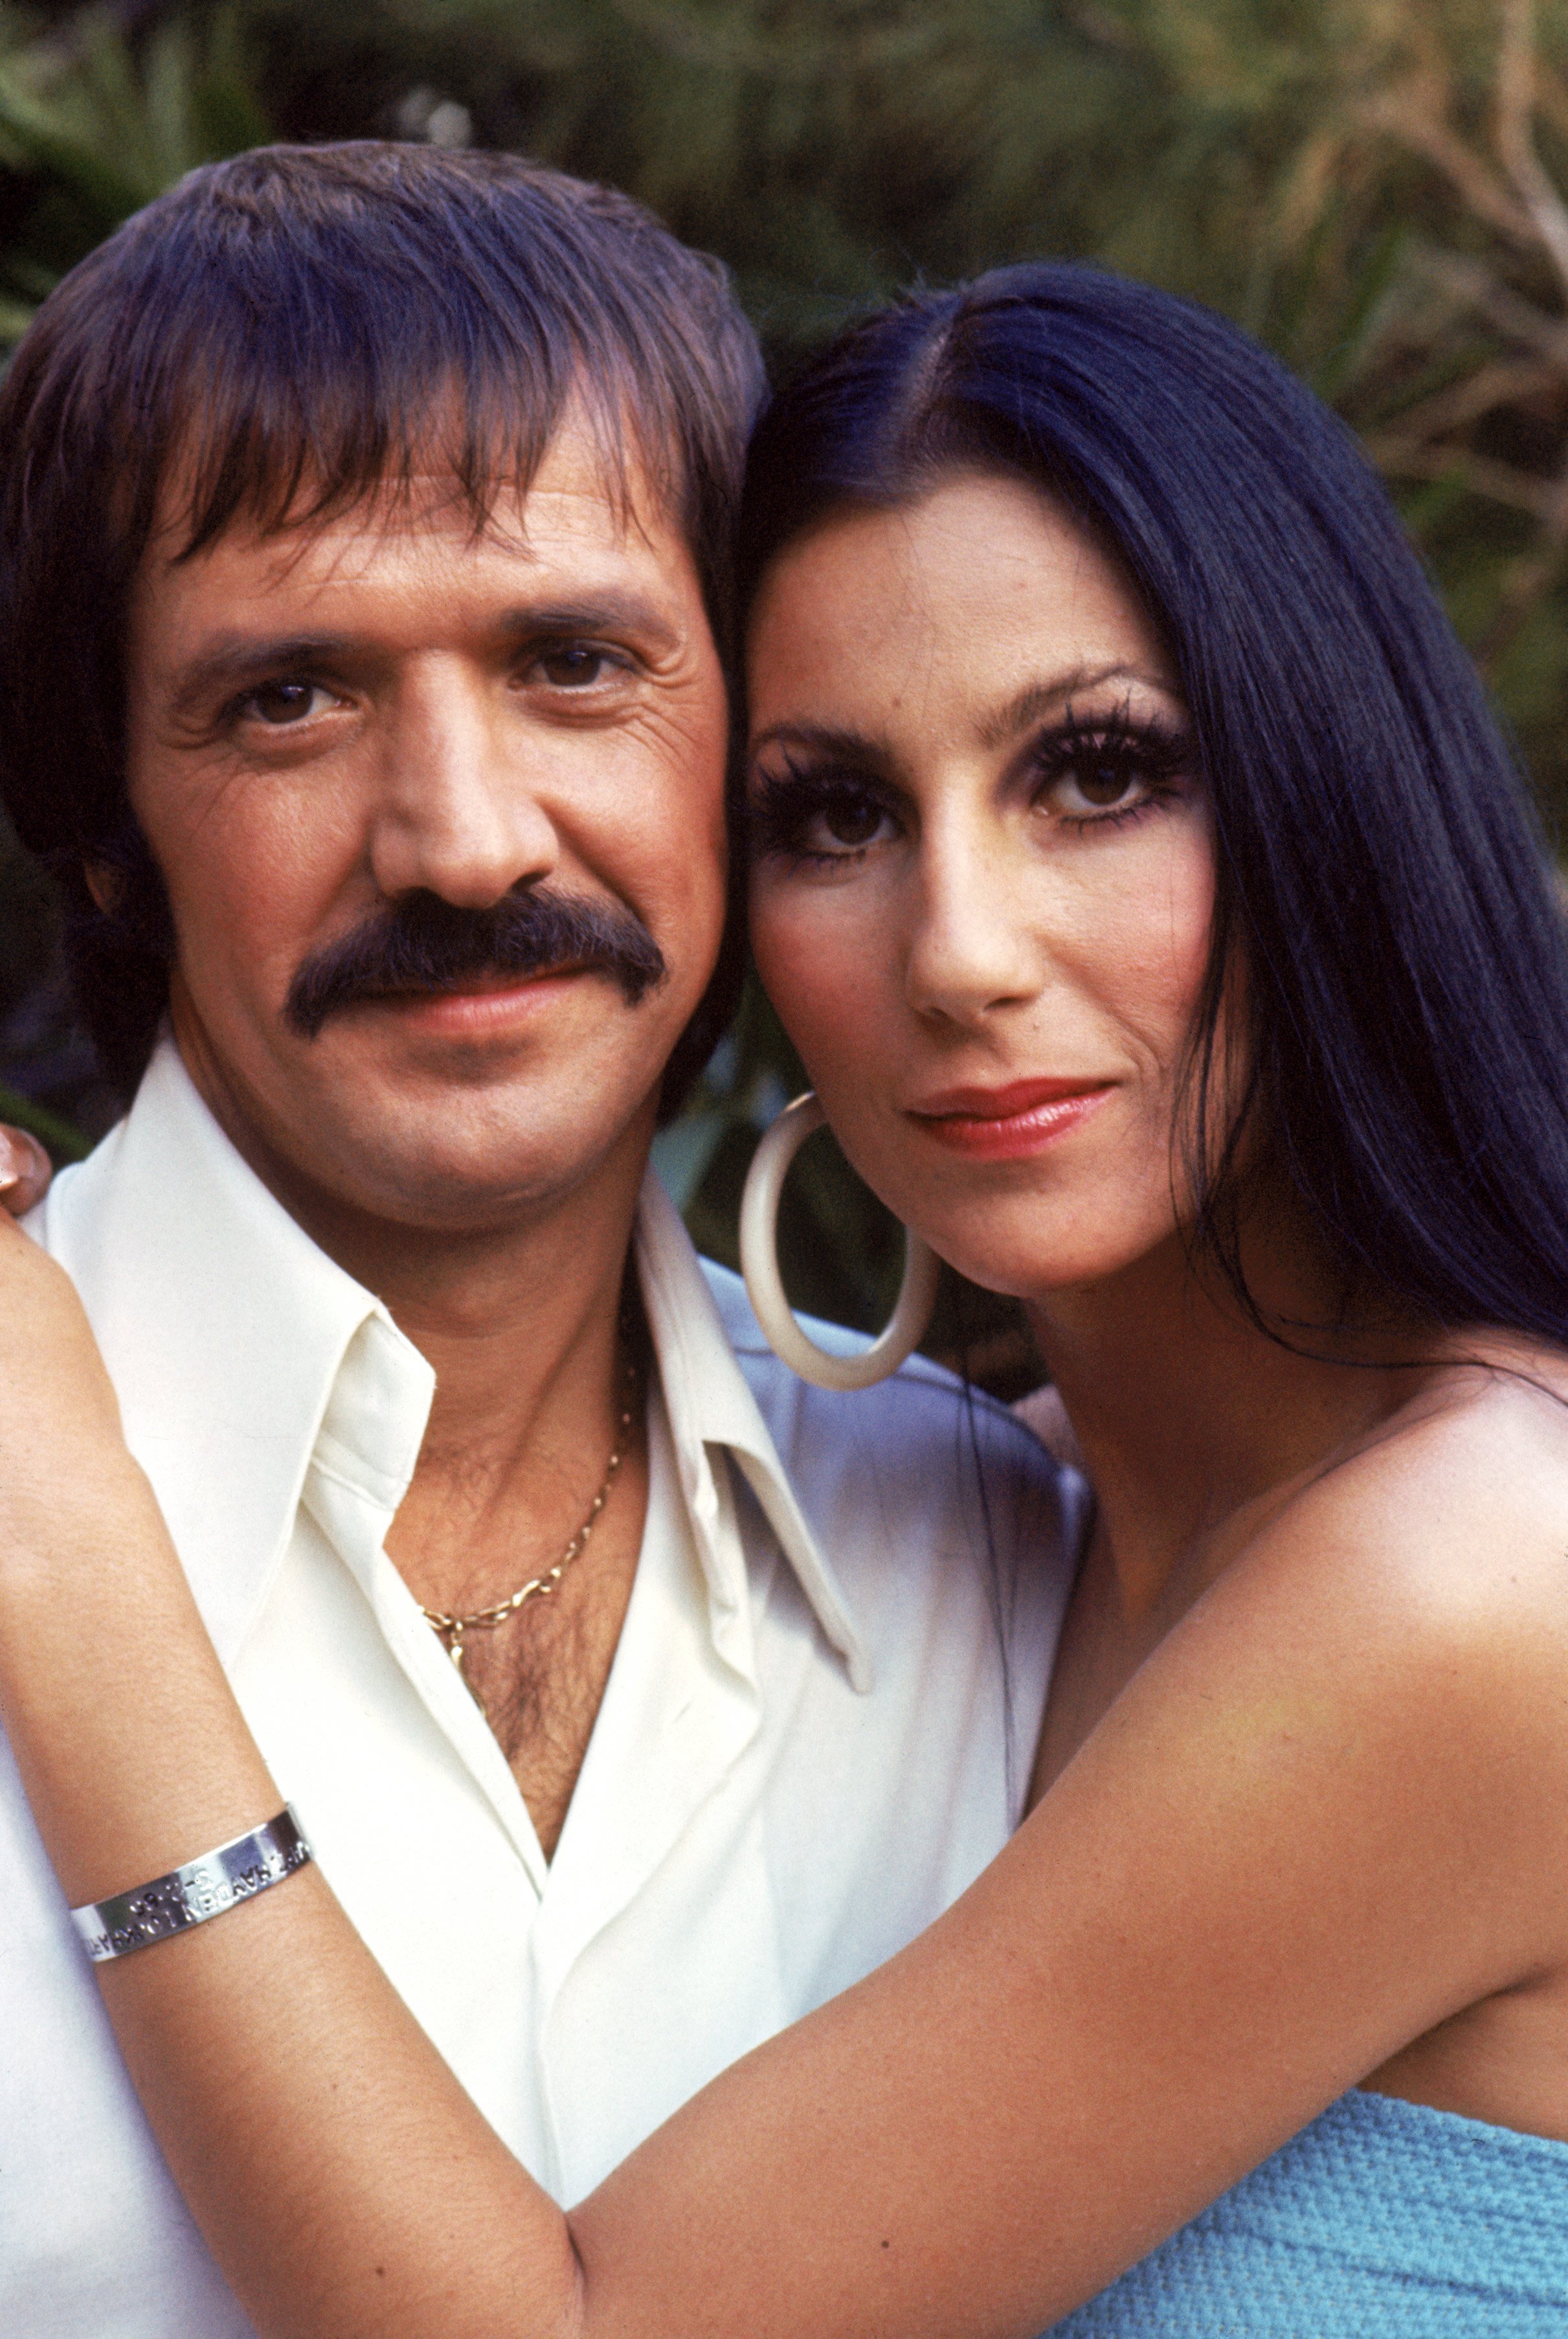 Cher et Sonny Bono posent pour une photo promotionnelle pour "The Sonny and Cher Show" | Source: Getty Images